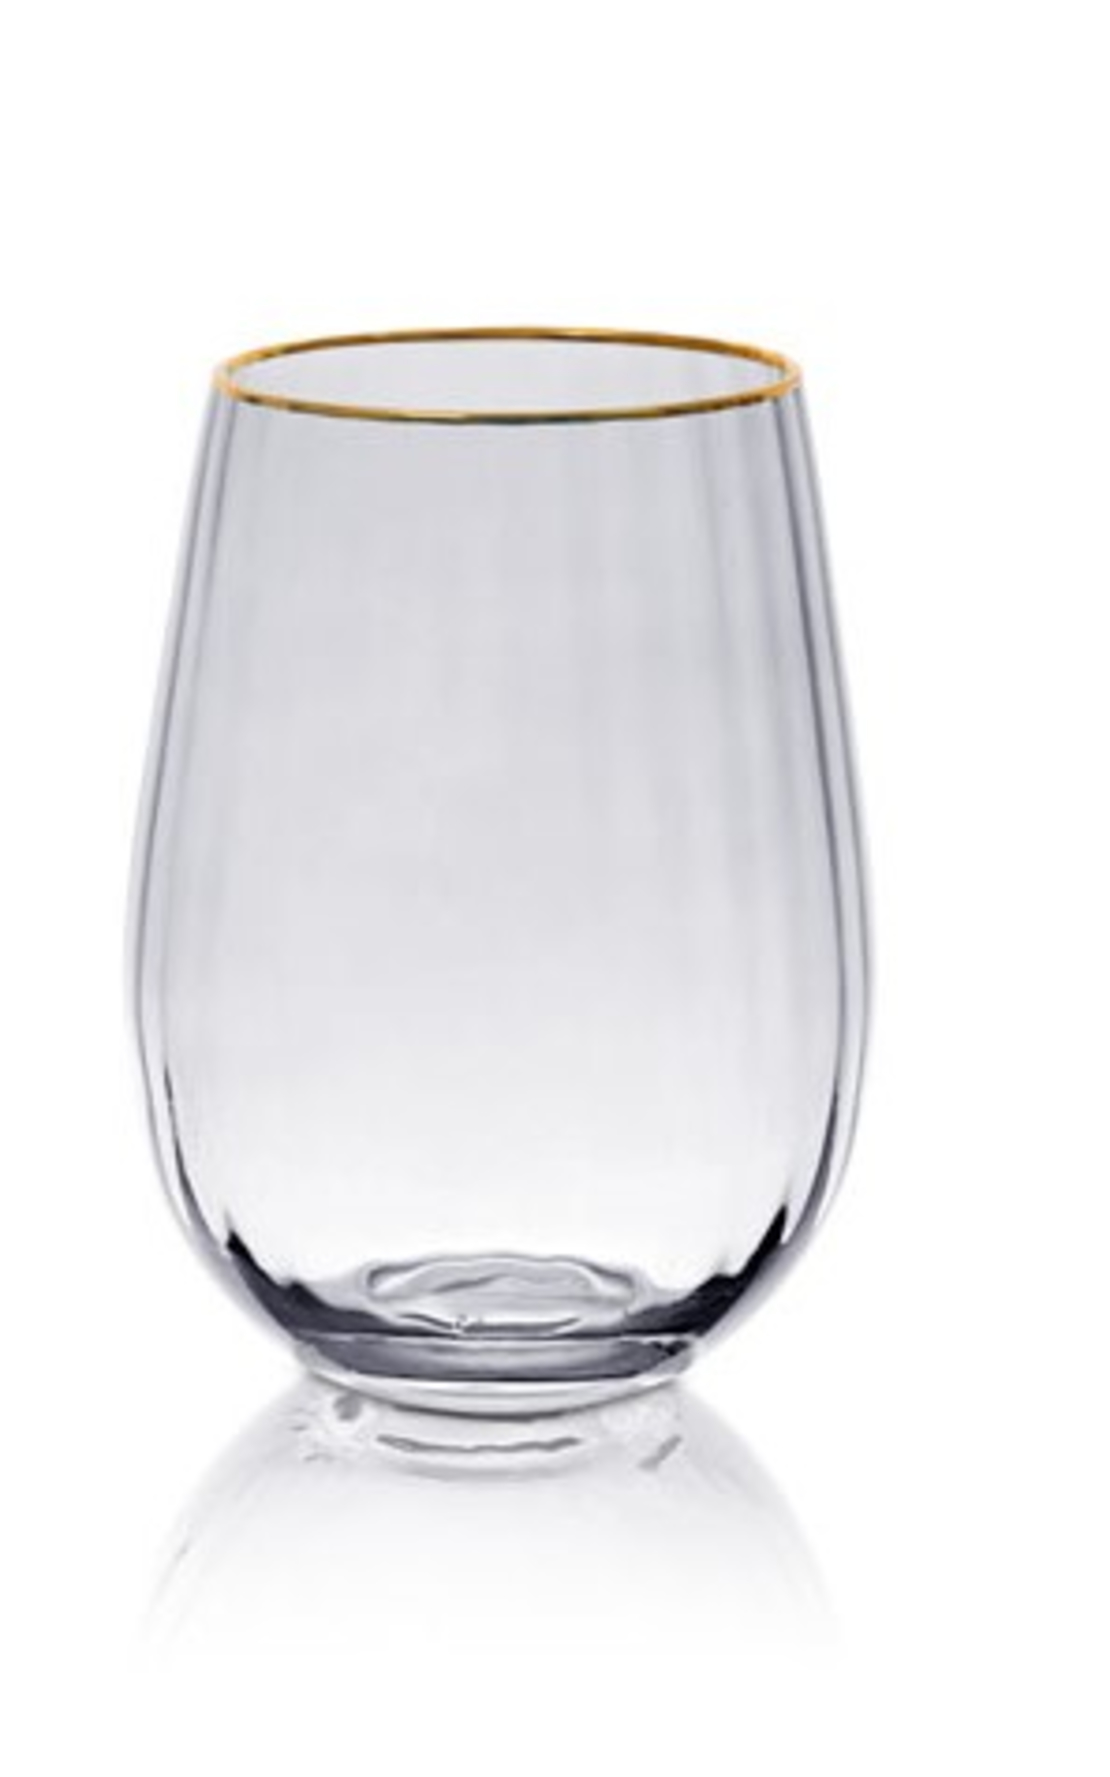 סט 6 כוסות וויסקי זכוכית שקופה פס זהב